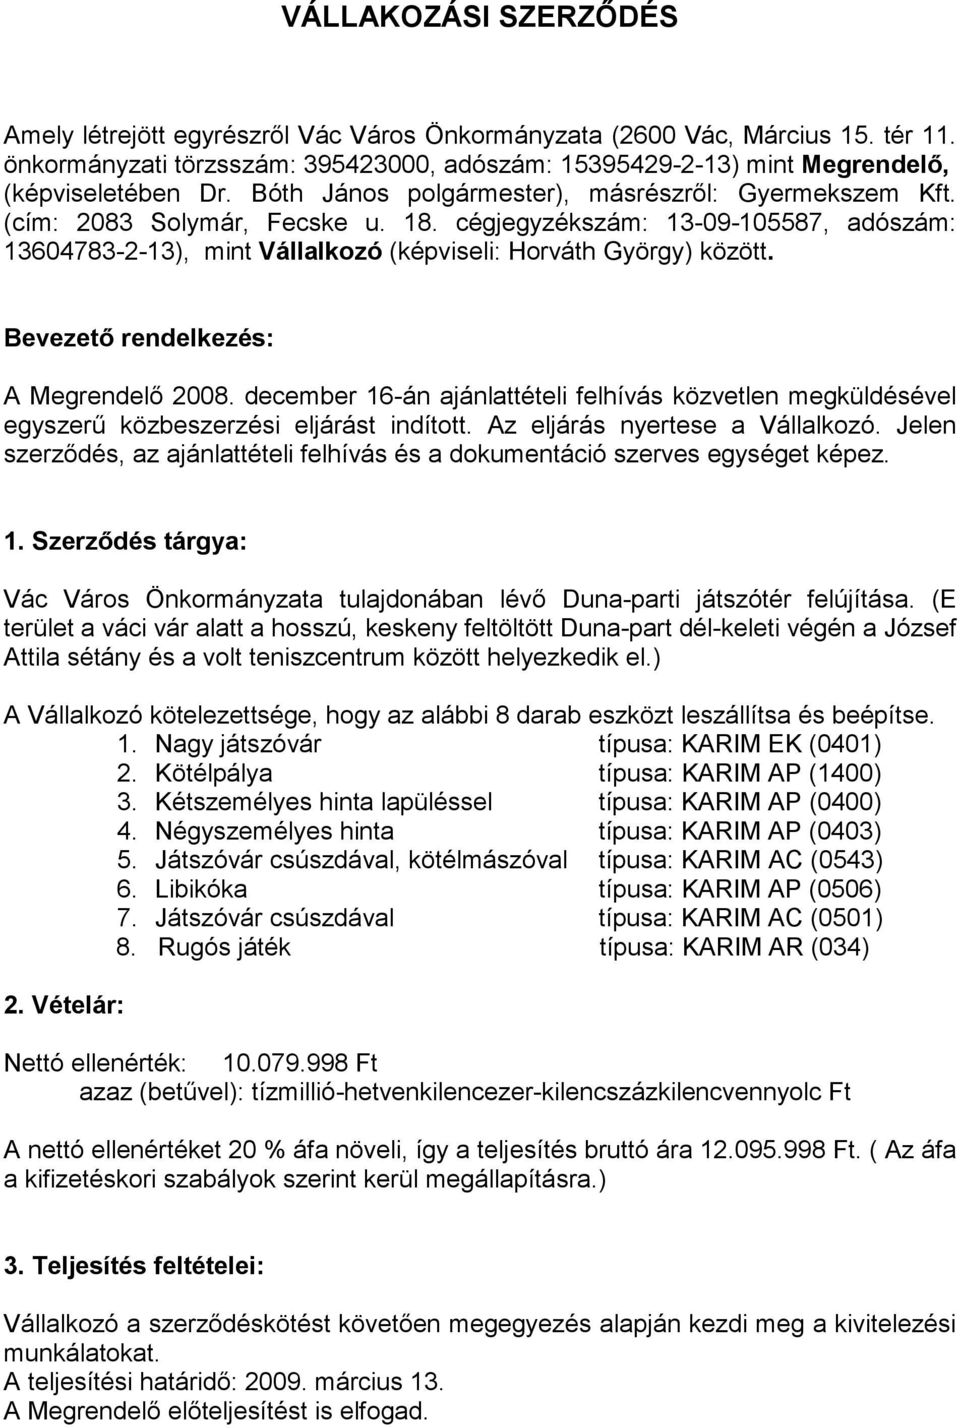 Bevezetı rendelkezés: A Megrendelı 2008. december 16-án ajánlattételi felhívás közvetlen megküldésével egyszerő közbeszerzési eljárást indított. Az eljárás nyertese a Vállalkozó.